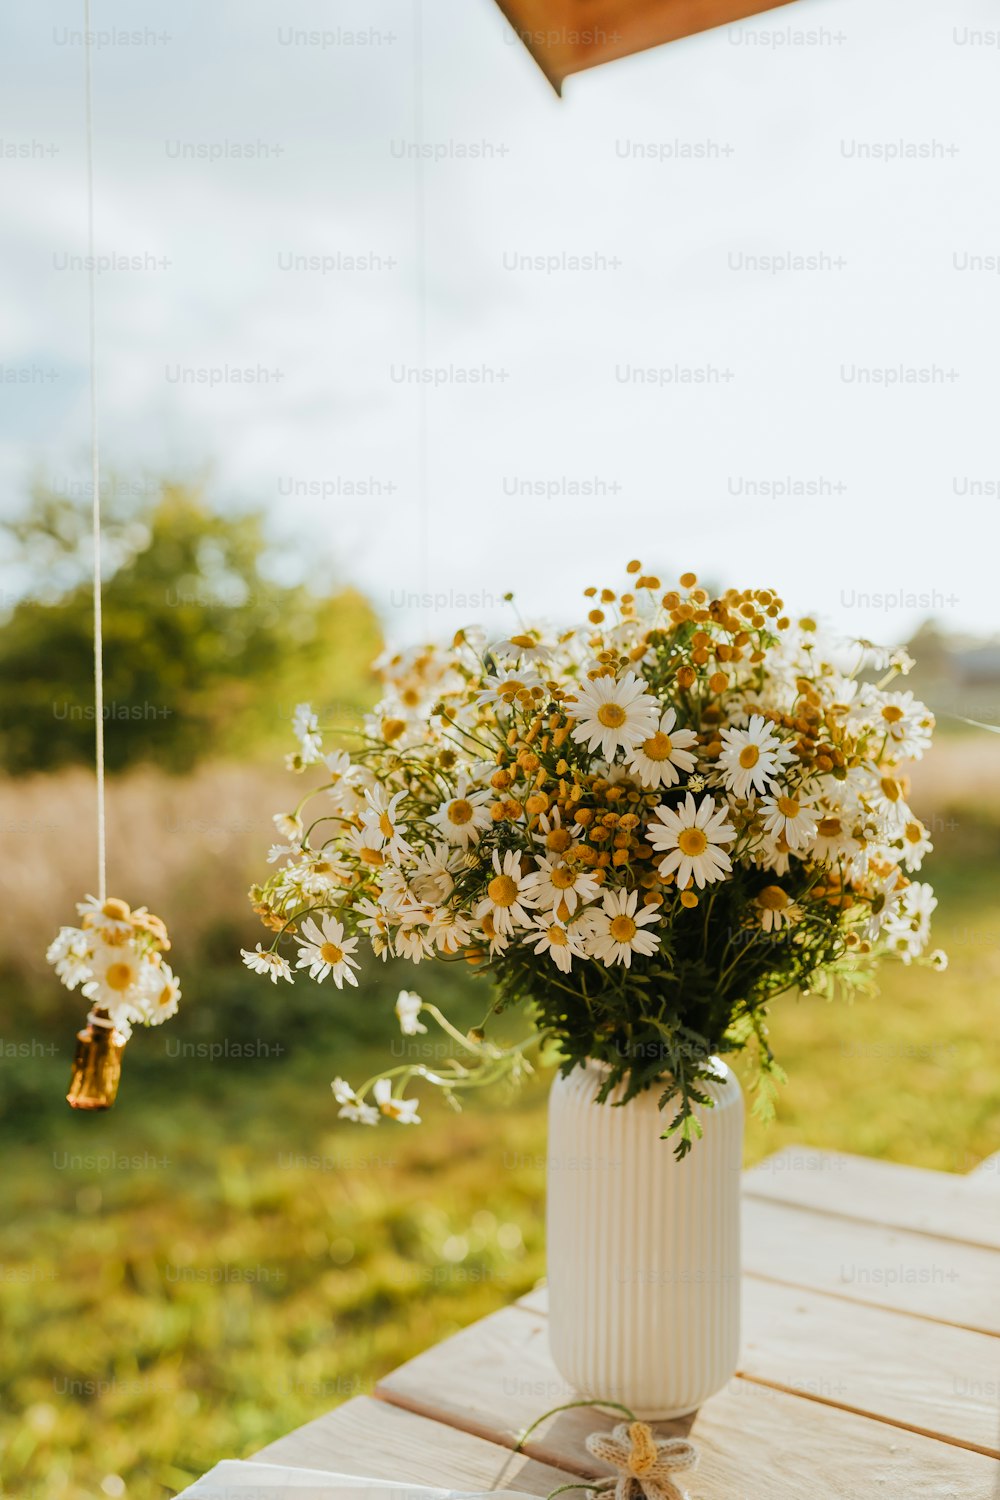 나무 탁자 위에 꽃이 잔뜩 피어 있는 하얀 꽃병